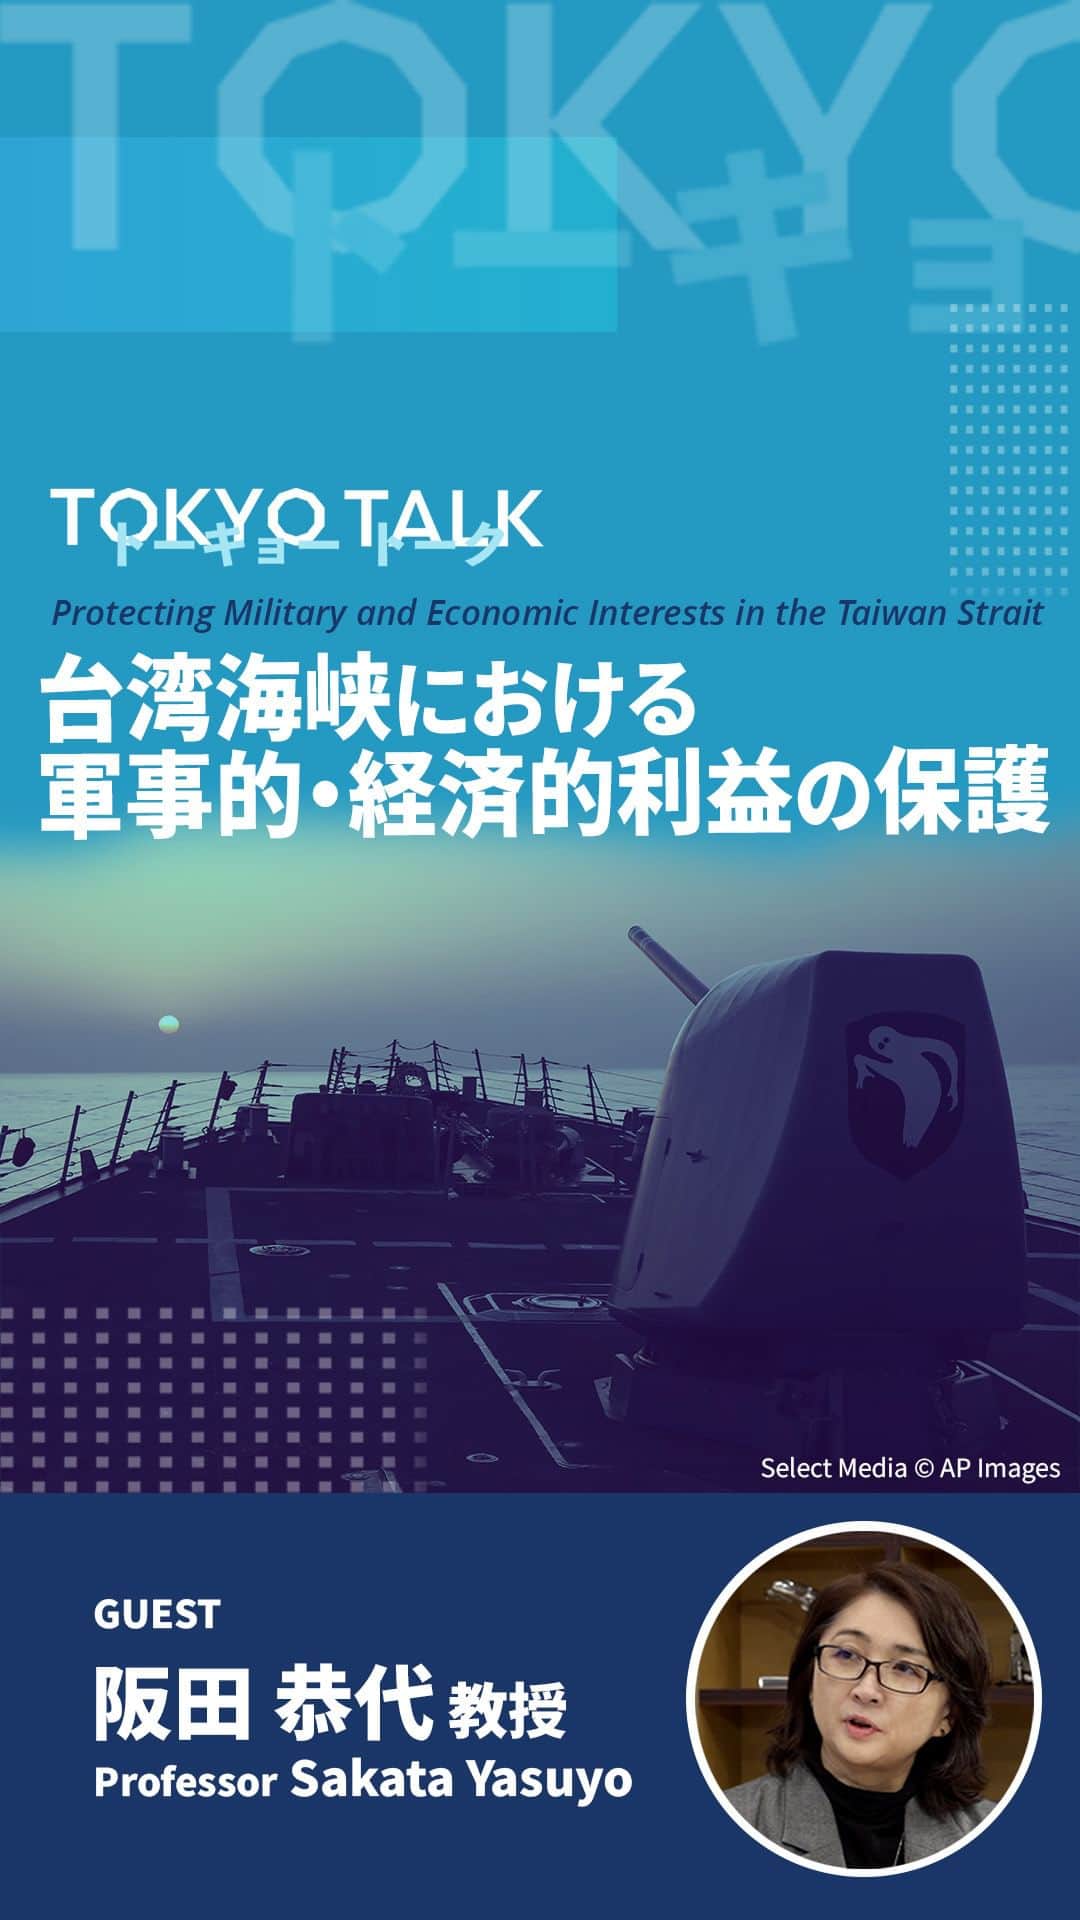 アメリカ大使館のインスタグラム：「【#TokyoTalk】台湾海峡における軍事的・経済的利益の保護 [English text follows Japanese] 日米韓は、台湾海峡における共通の軍事的・経済的利益を共有しています。日米韓がこの緊急課題に協力するべき理由について、神田外語大学の阪田教授が分析します。 https://youtu.be/QmMDJwMGruI  Protecting Military and Economic Interests in the Taiwan Strait The U.S., Japan, and Korea share military and economic interests in a secure Taiwan Strait. Listen to Kanda University of International Studies Professor Sakata analyze why the three countries must work together on this urgent task.  https://youtu.be/QmMDJwMGruI  #日米韓 #日米関係 #中国 #台湾海峡 #USJapanKorea #USJapanRelations」